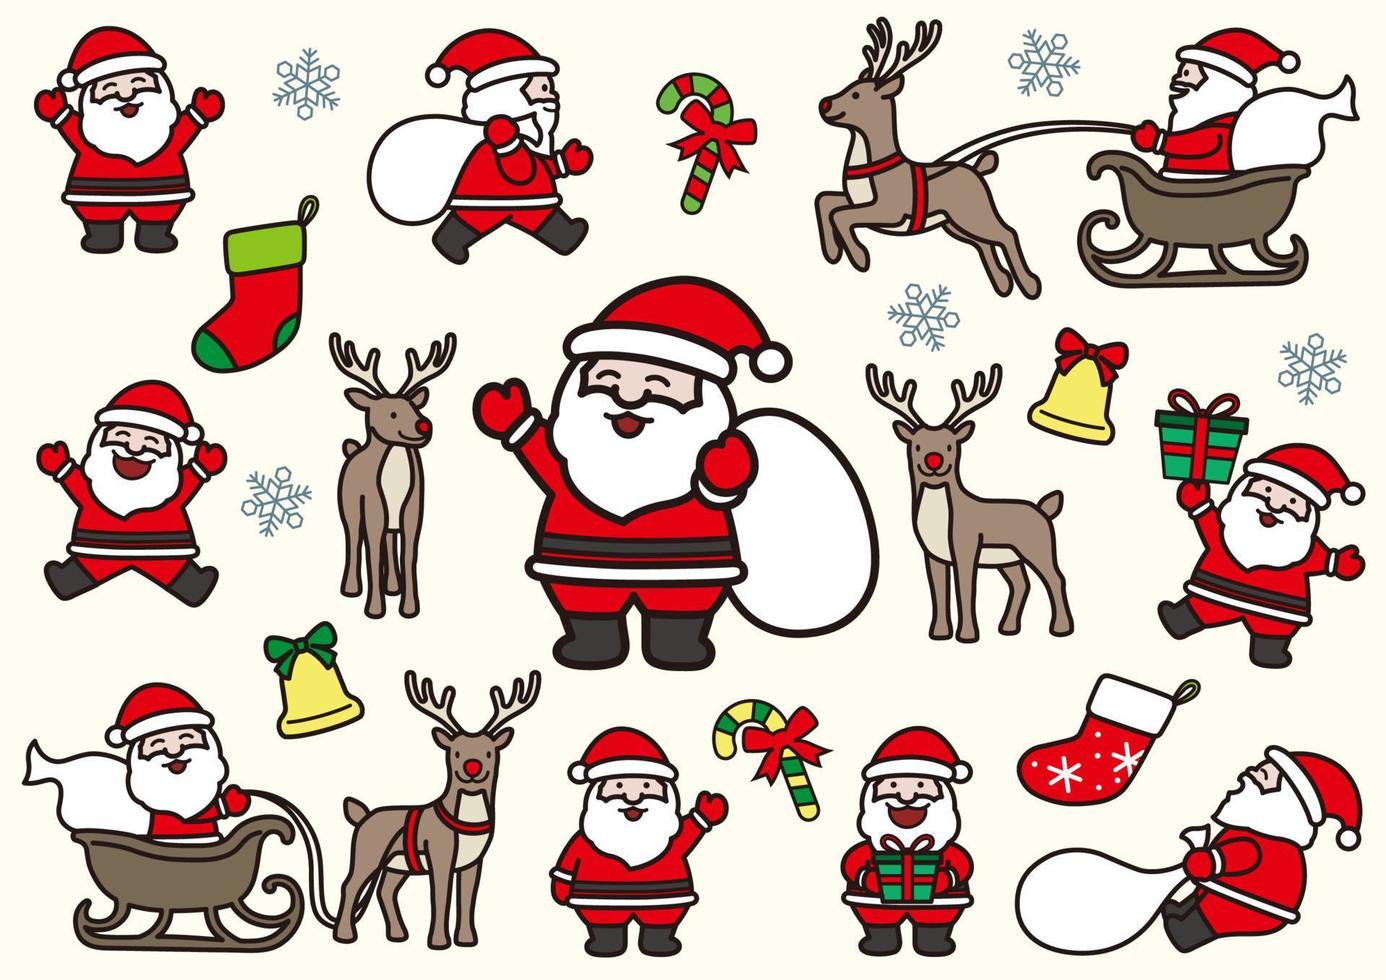 Divertidos dibujos animados de Papá Noel y renos en poses dinámicas, ilustración vectorial aislado sobre fondo blanco. vector